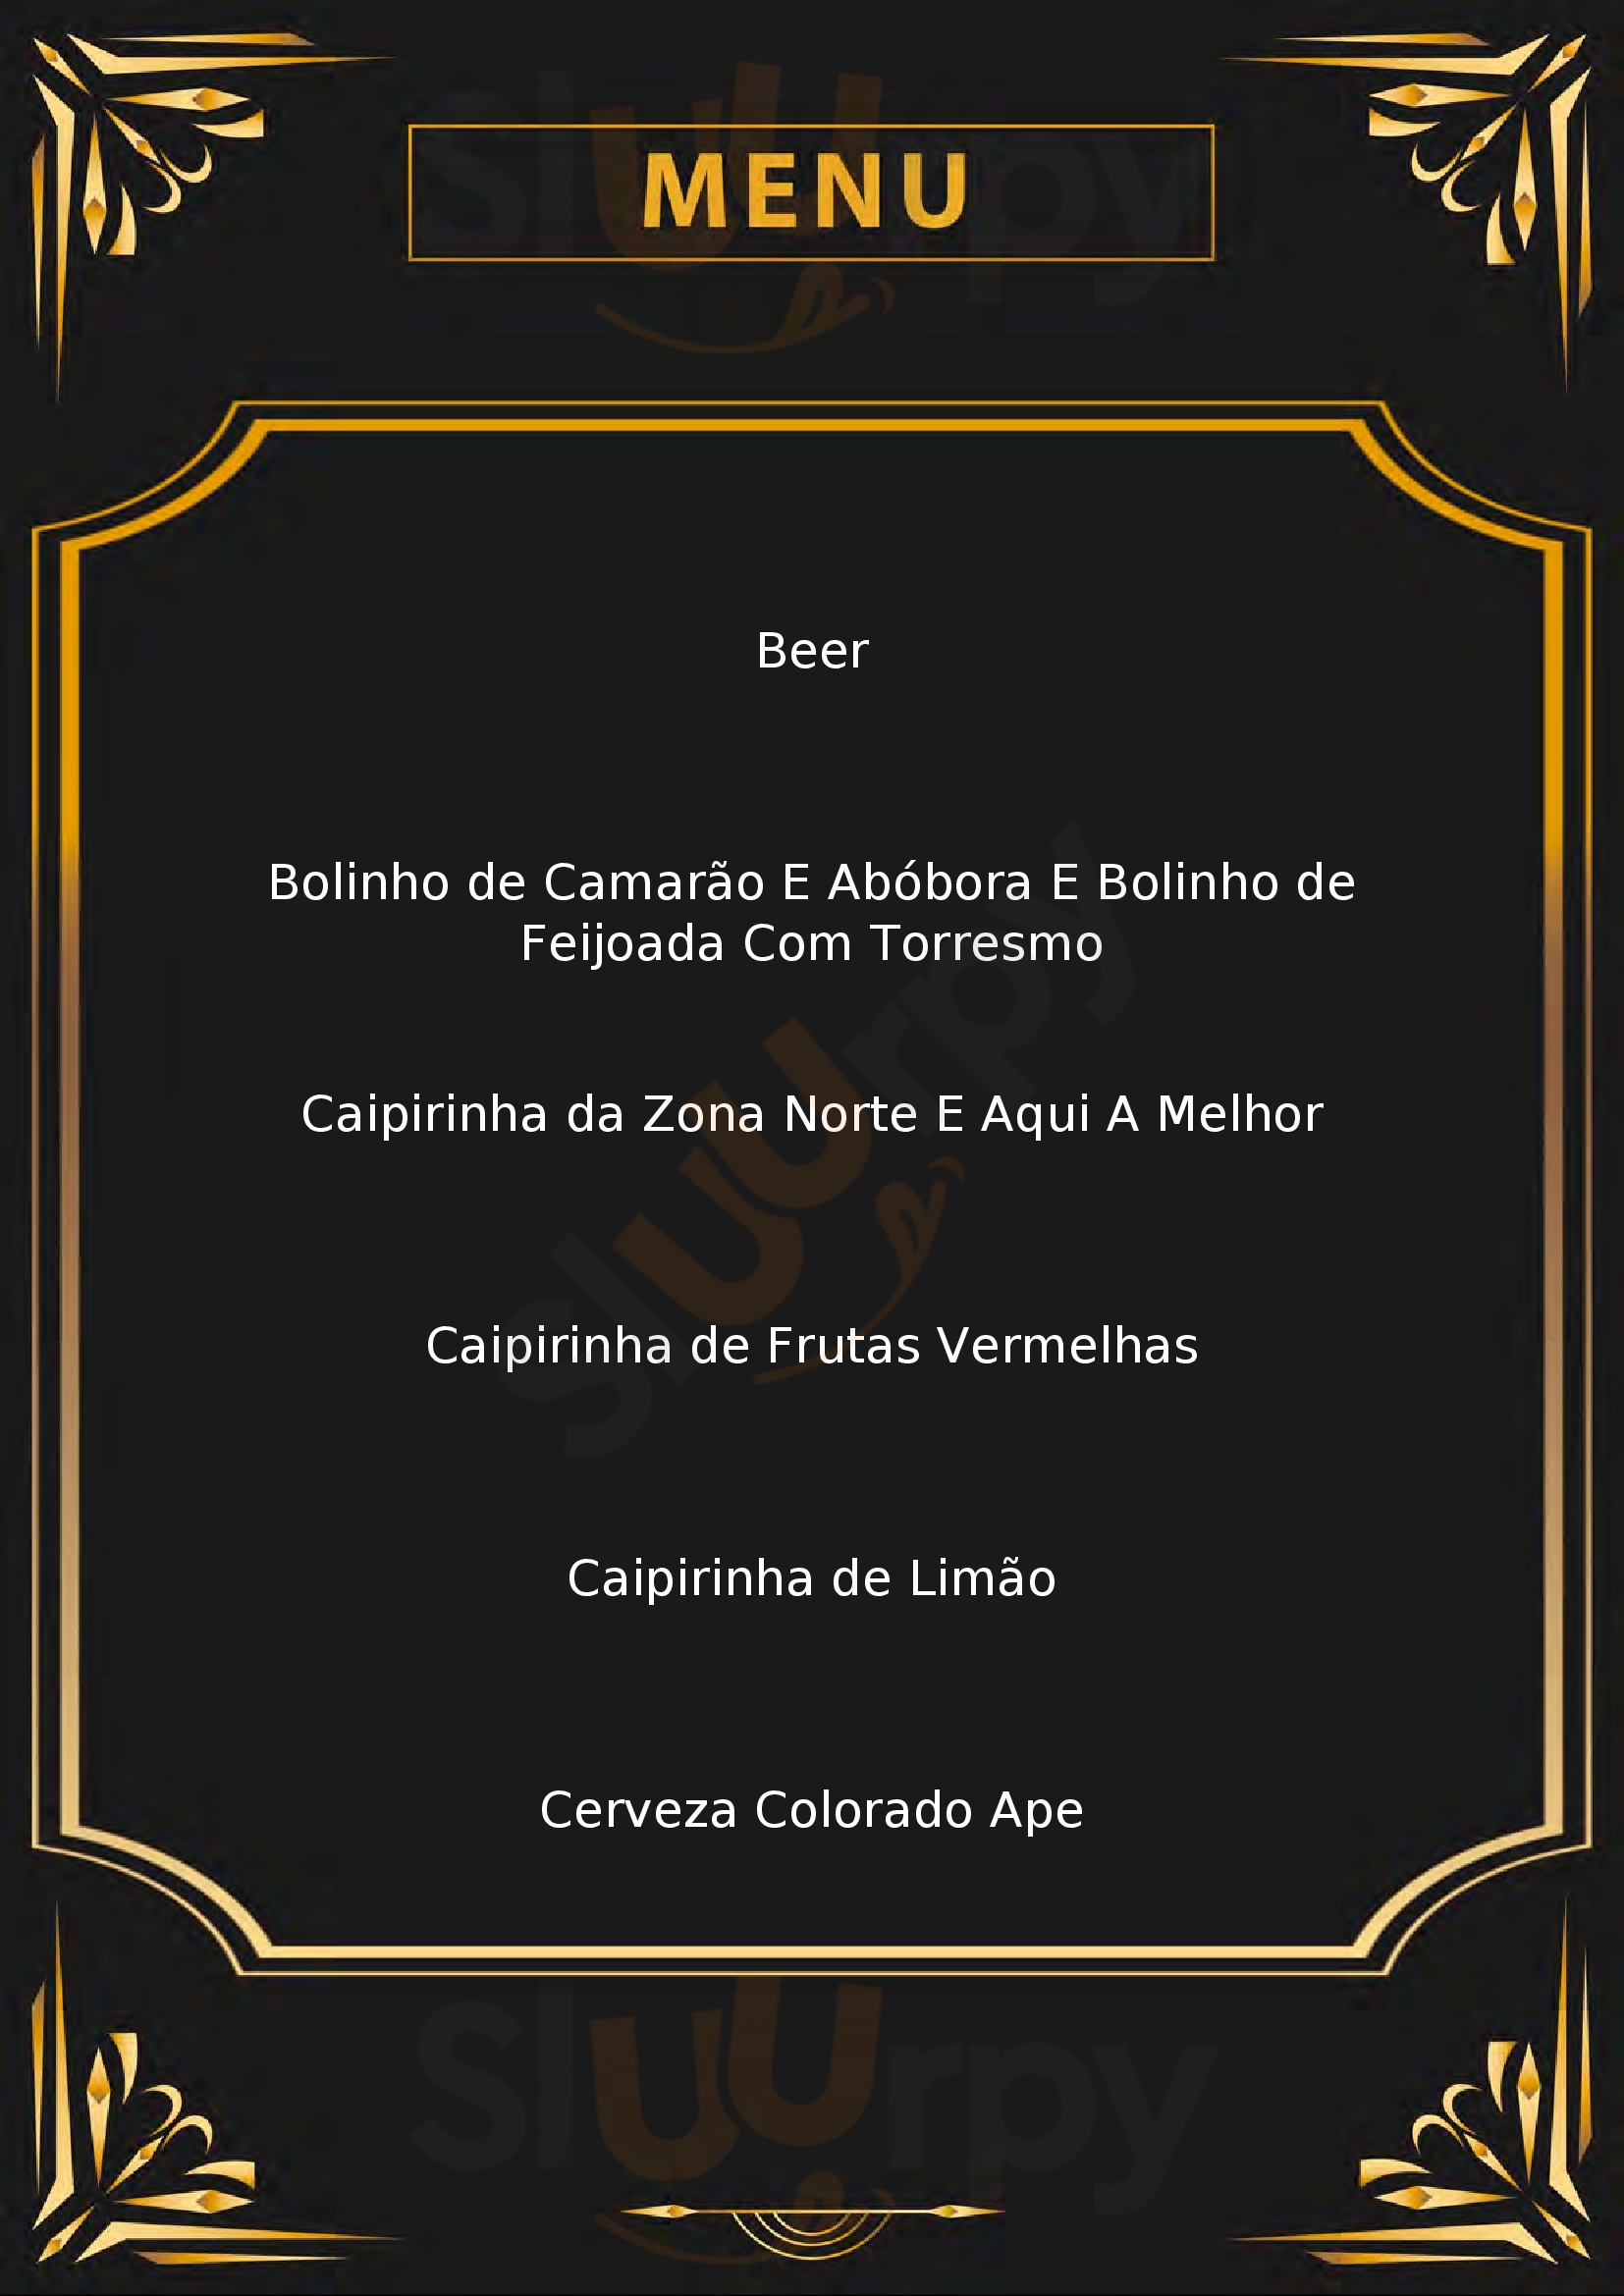 Bodega Bar São Paulo Menu - 1